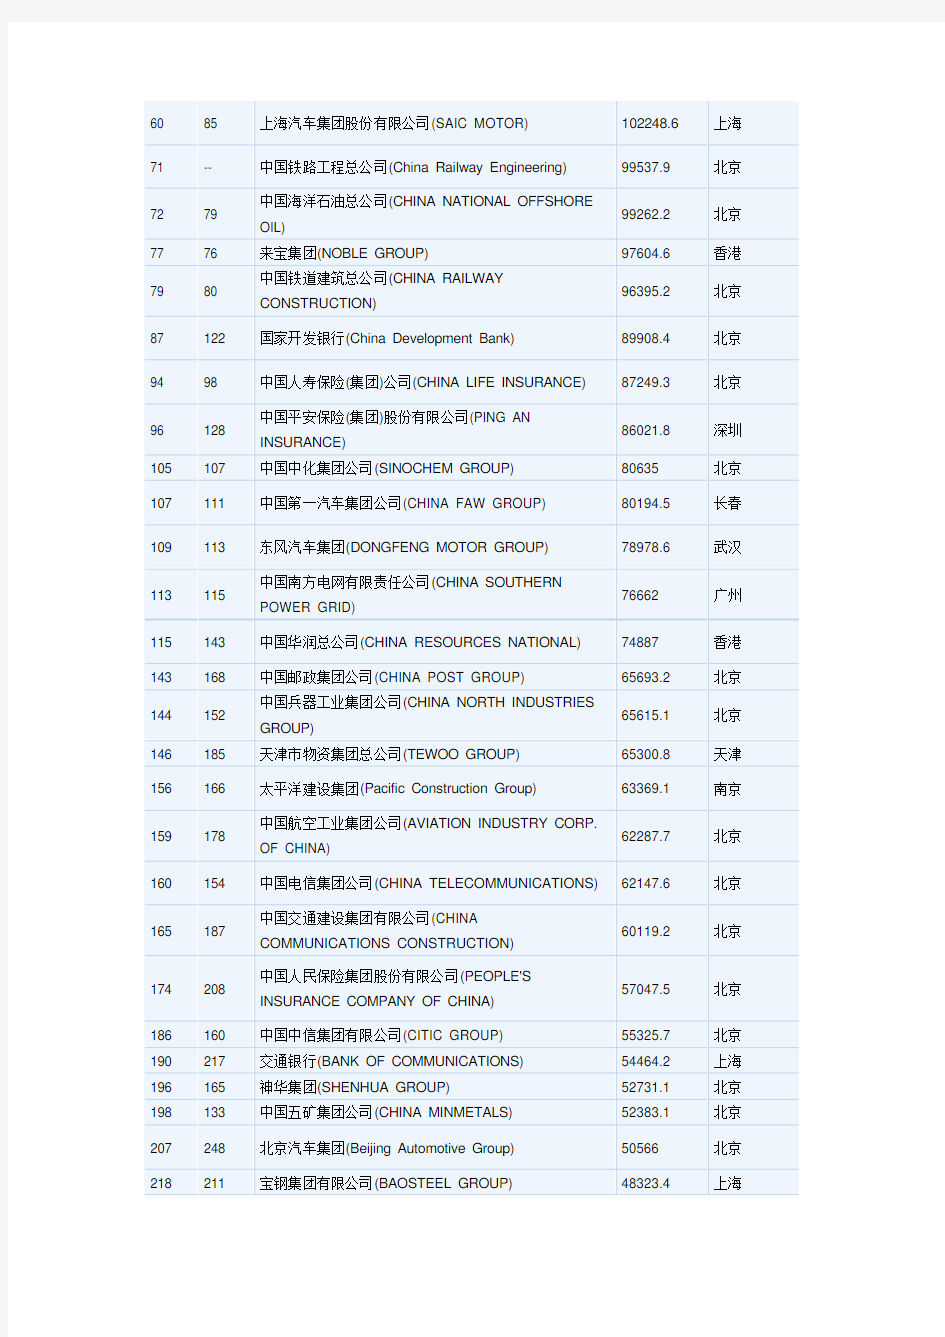 2015年世界500强企业名单(中国)